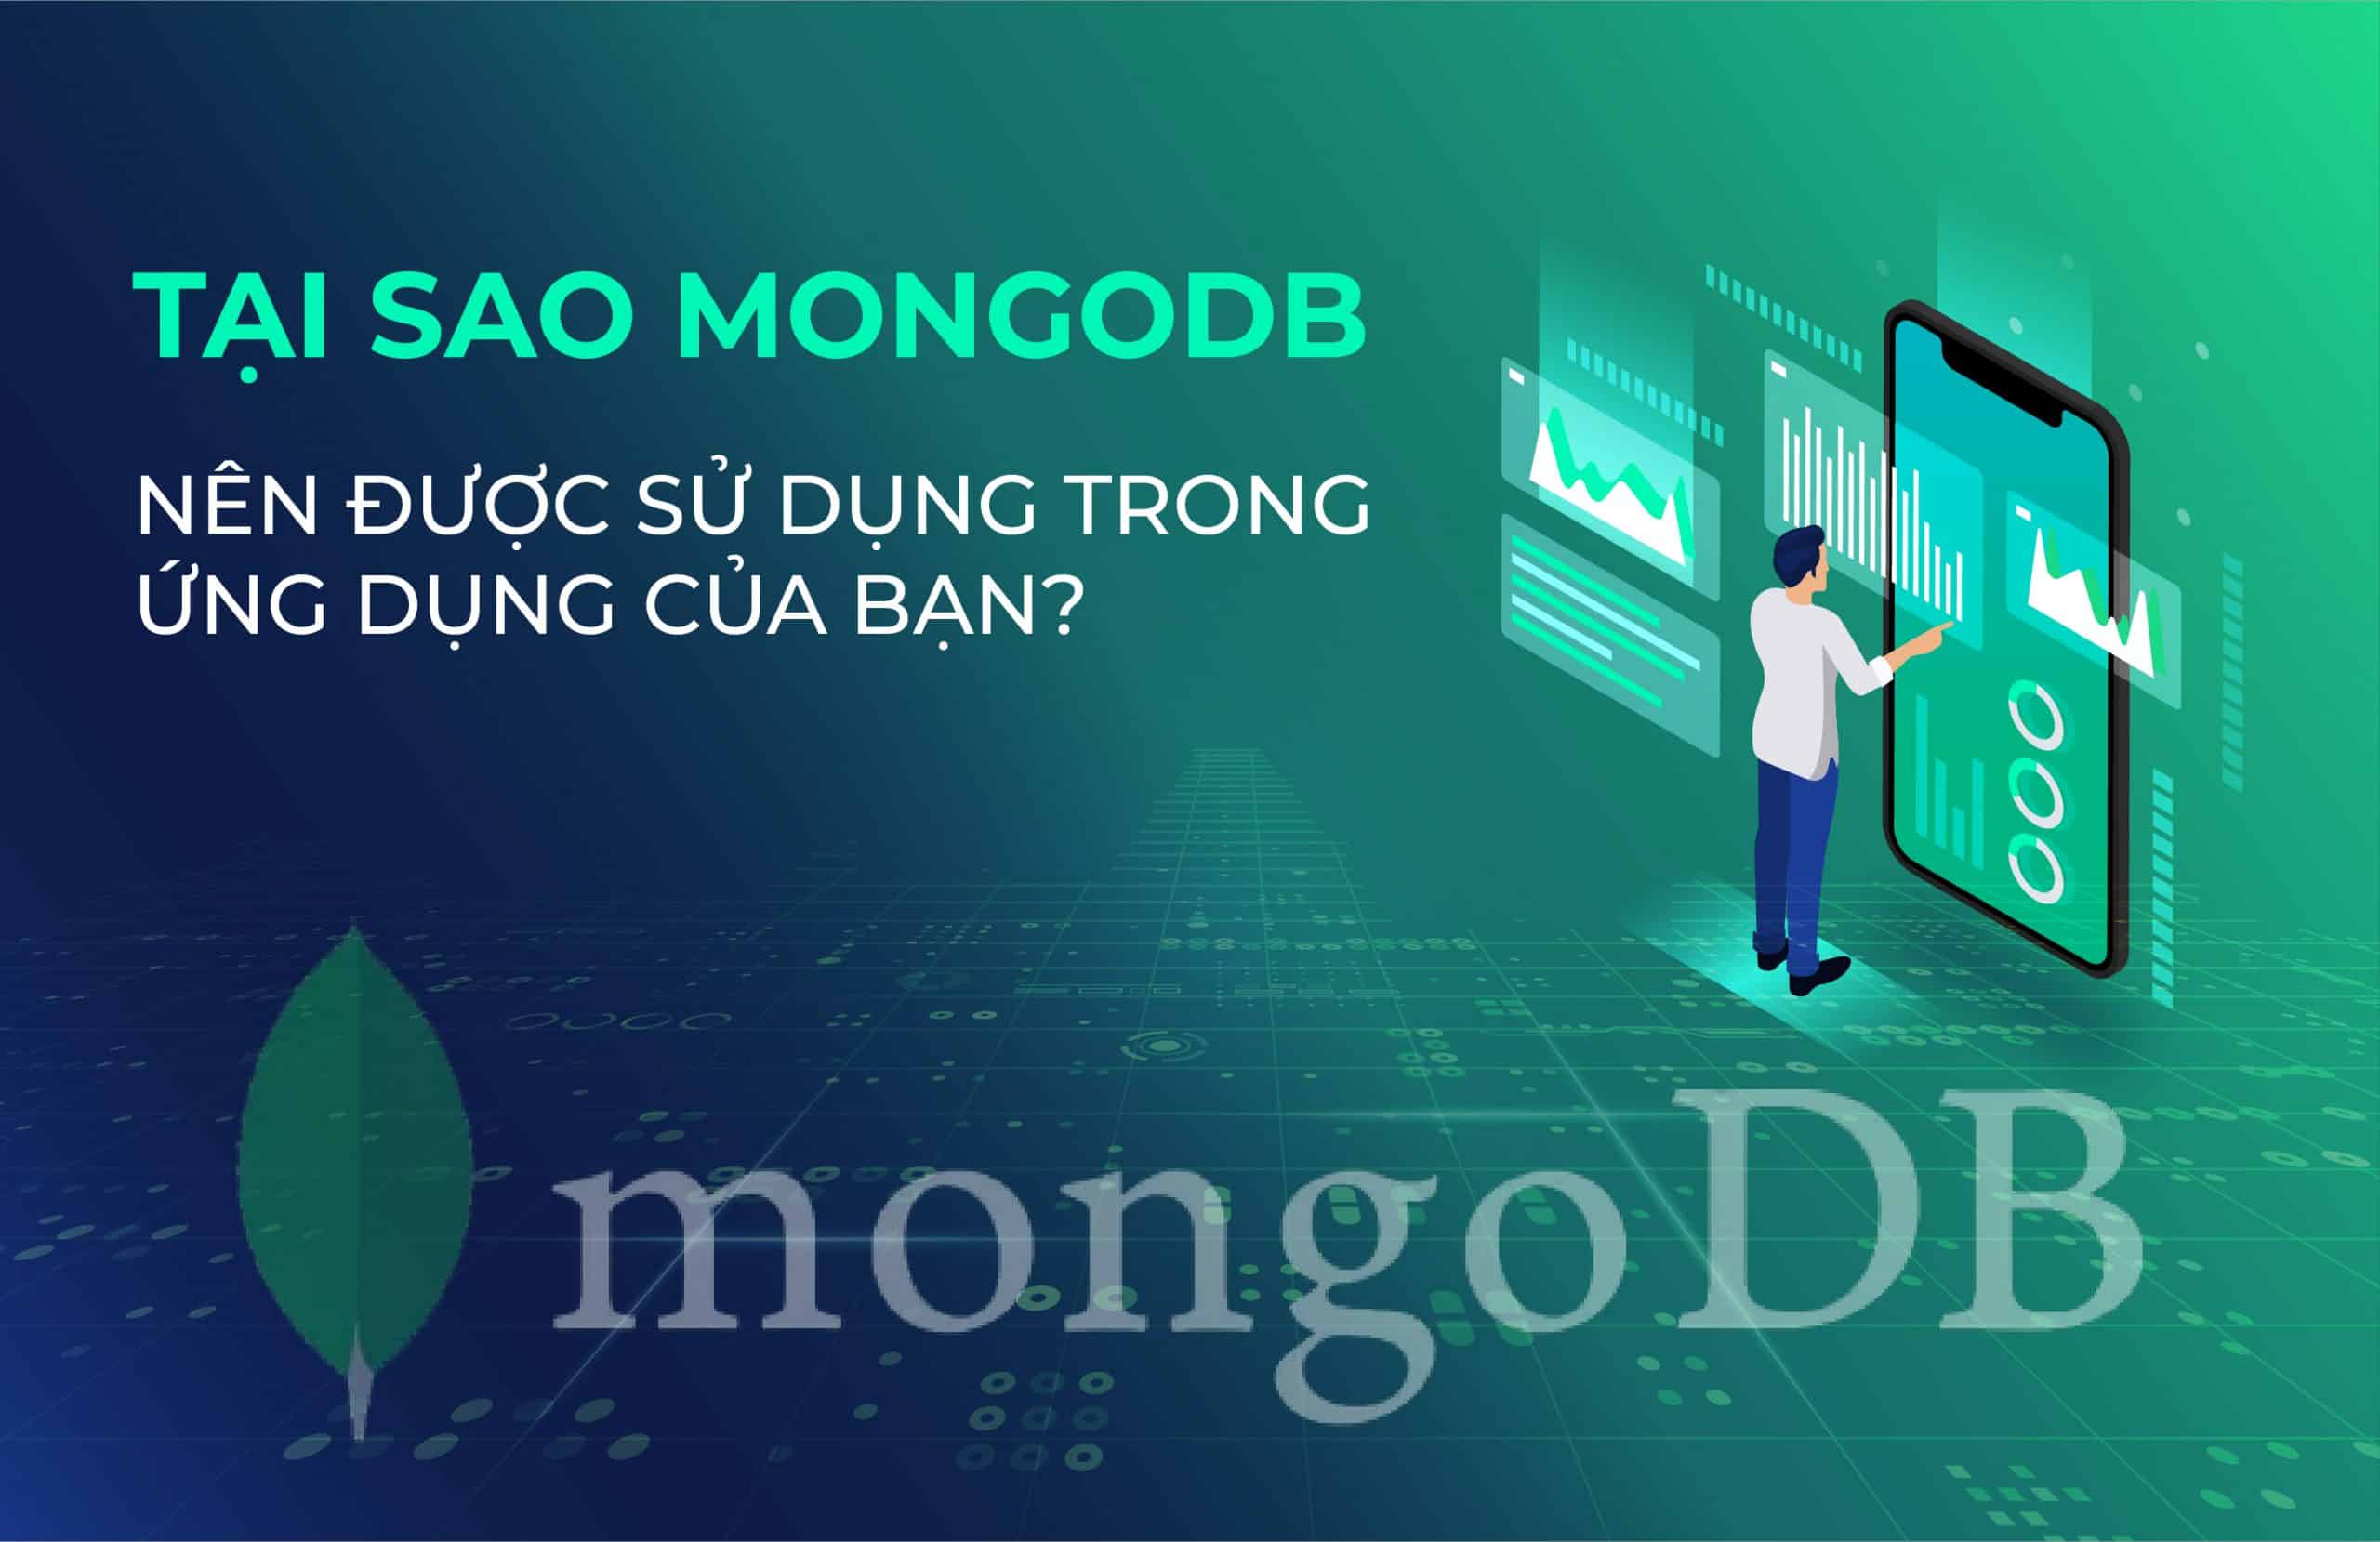 Tại sao Mongo DB nên được sử dụng trong ứng dụng của bạn